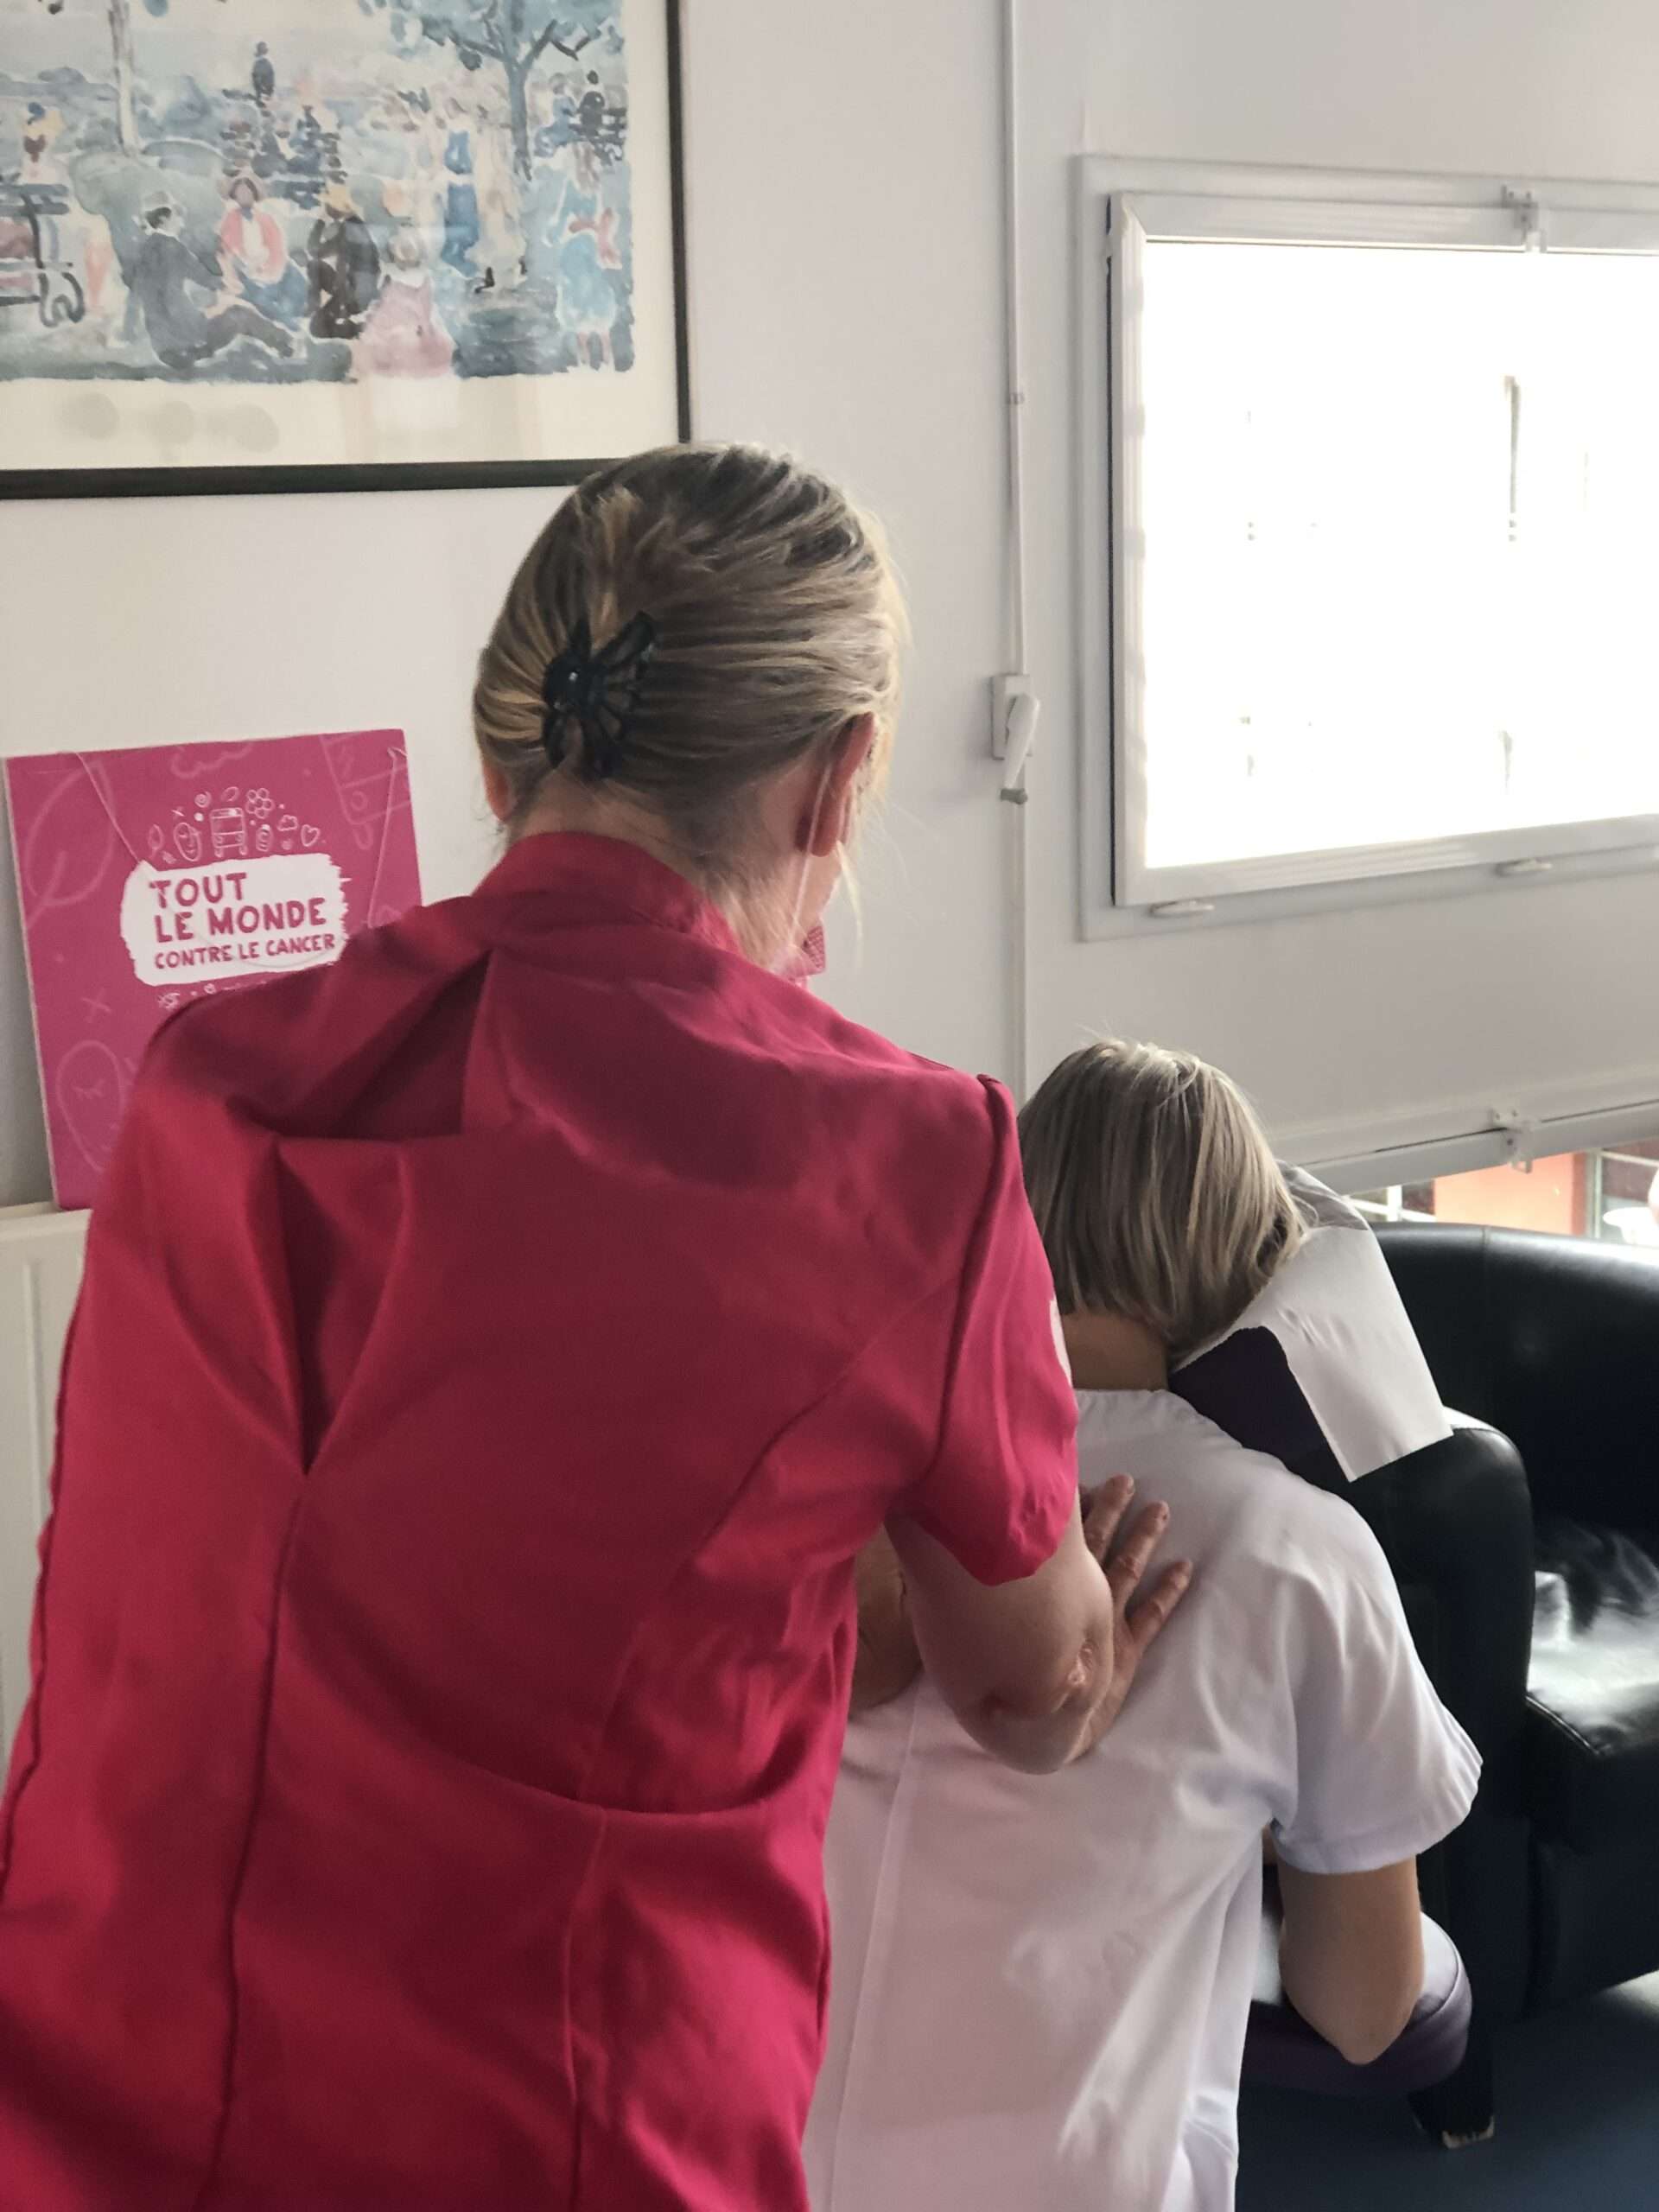 Massage aux professionnels de santé de l'association Tout le monde contre le cancer à l'occasion de l'échappée rose dans le cadre d'octobre rose.